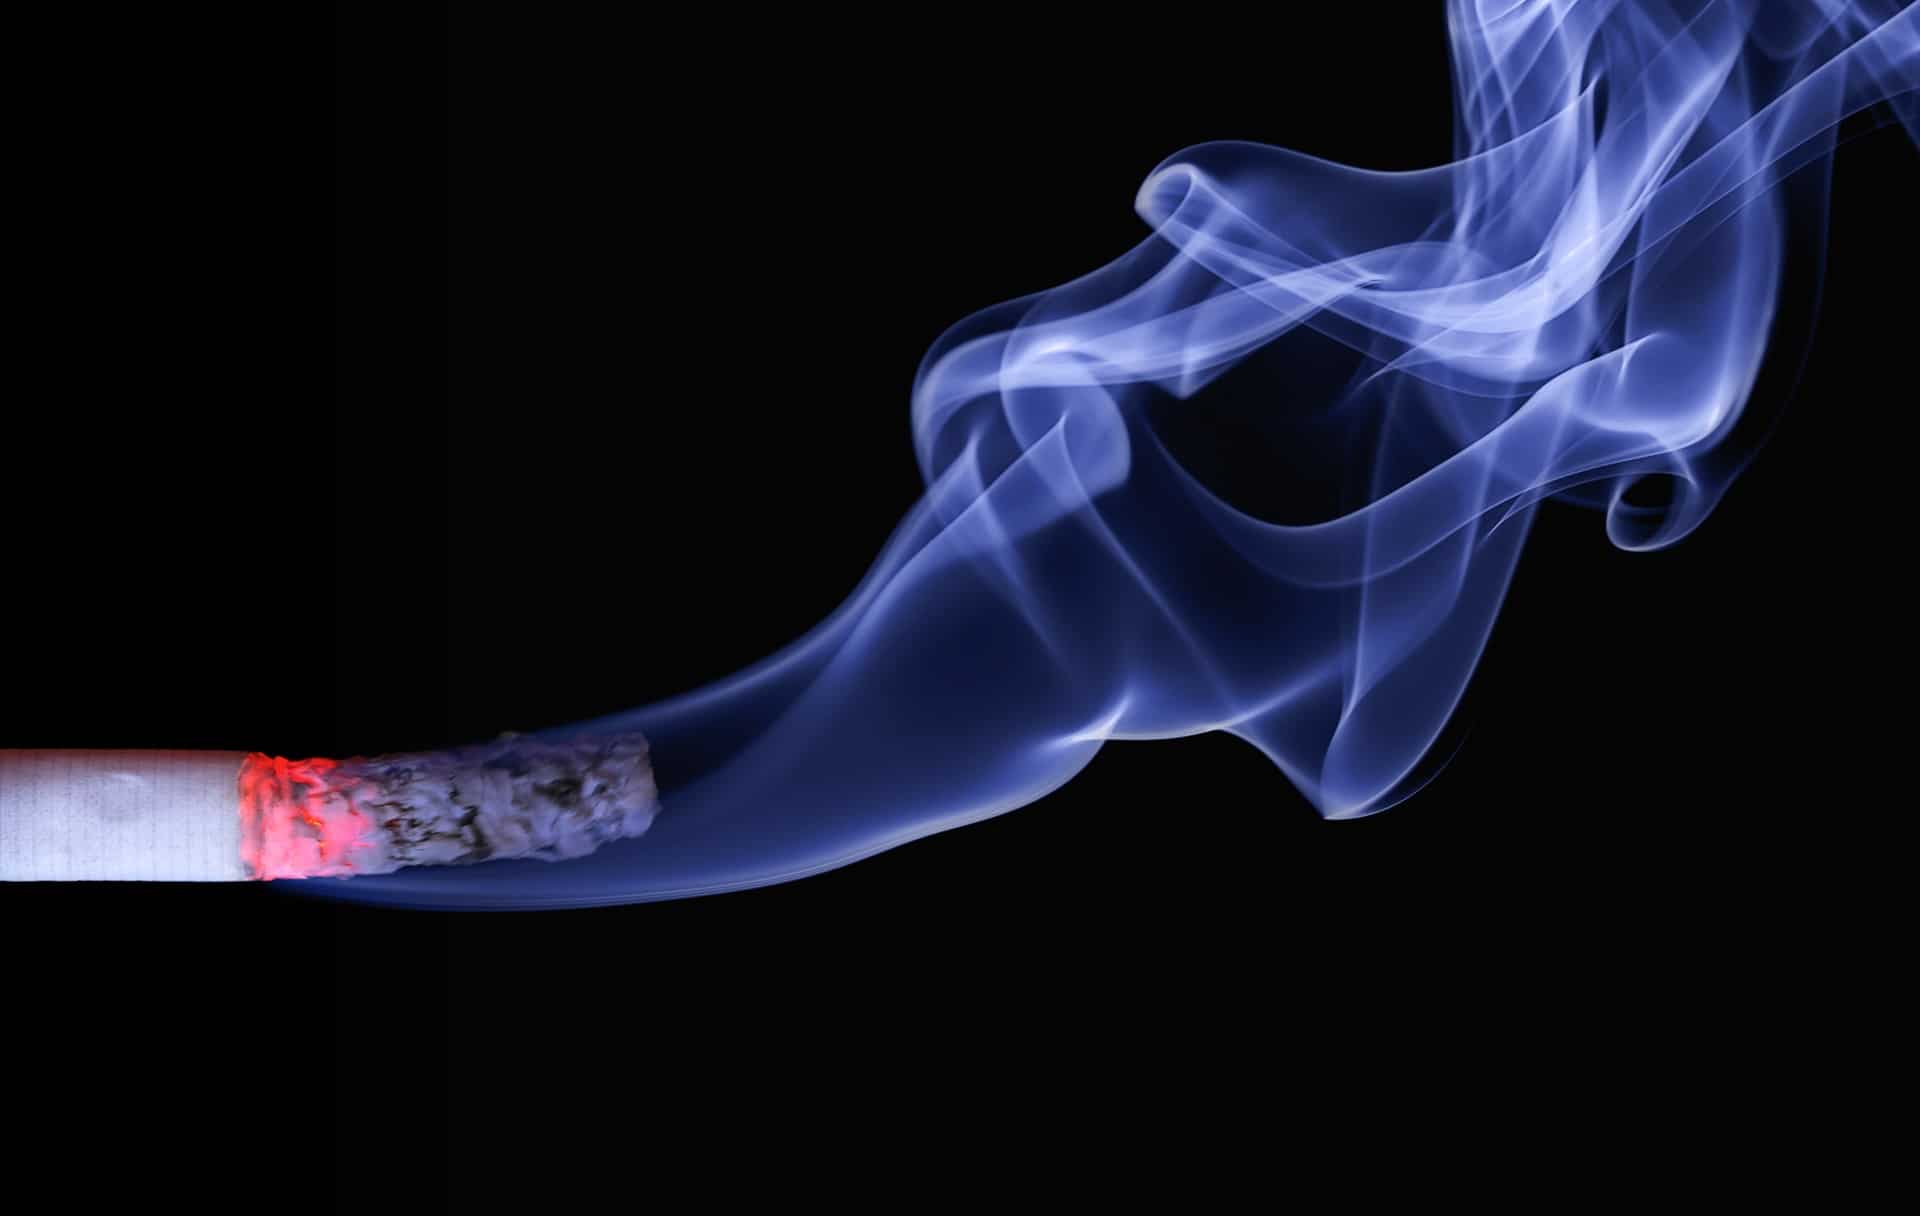 Explication du tabagisme après une extraction dentaire et de la stomatite à la nicotine